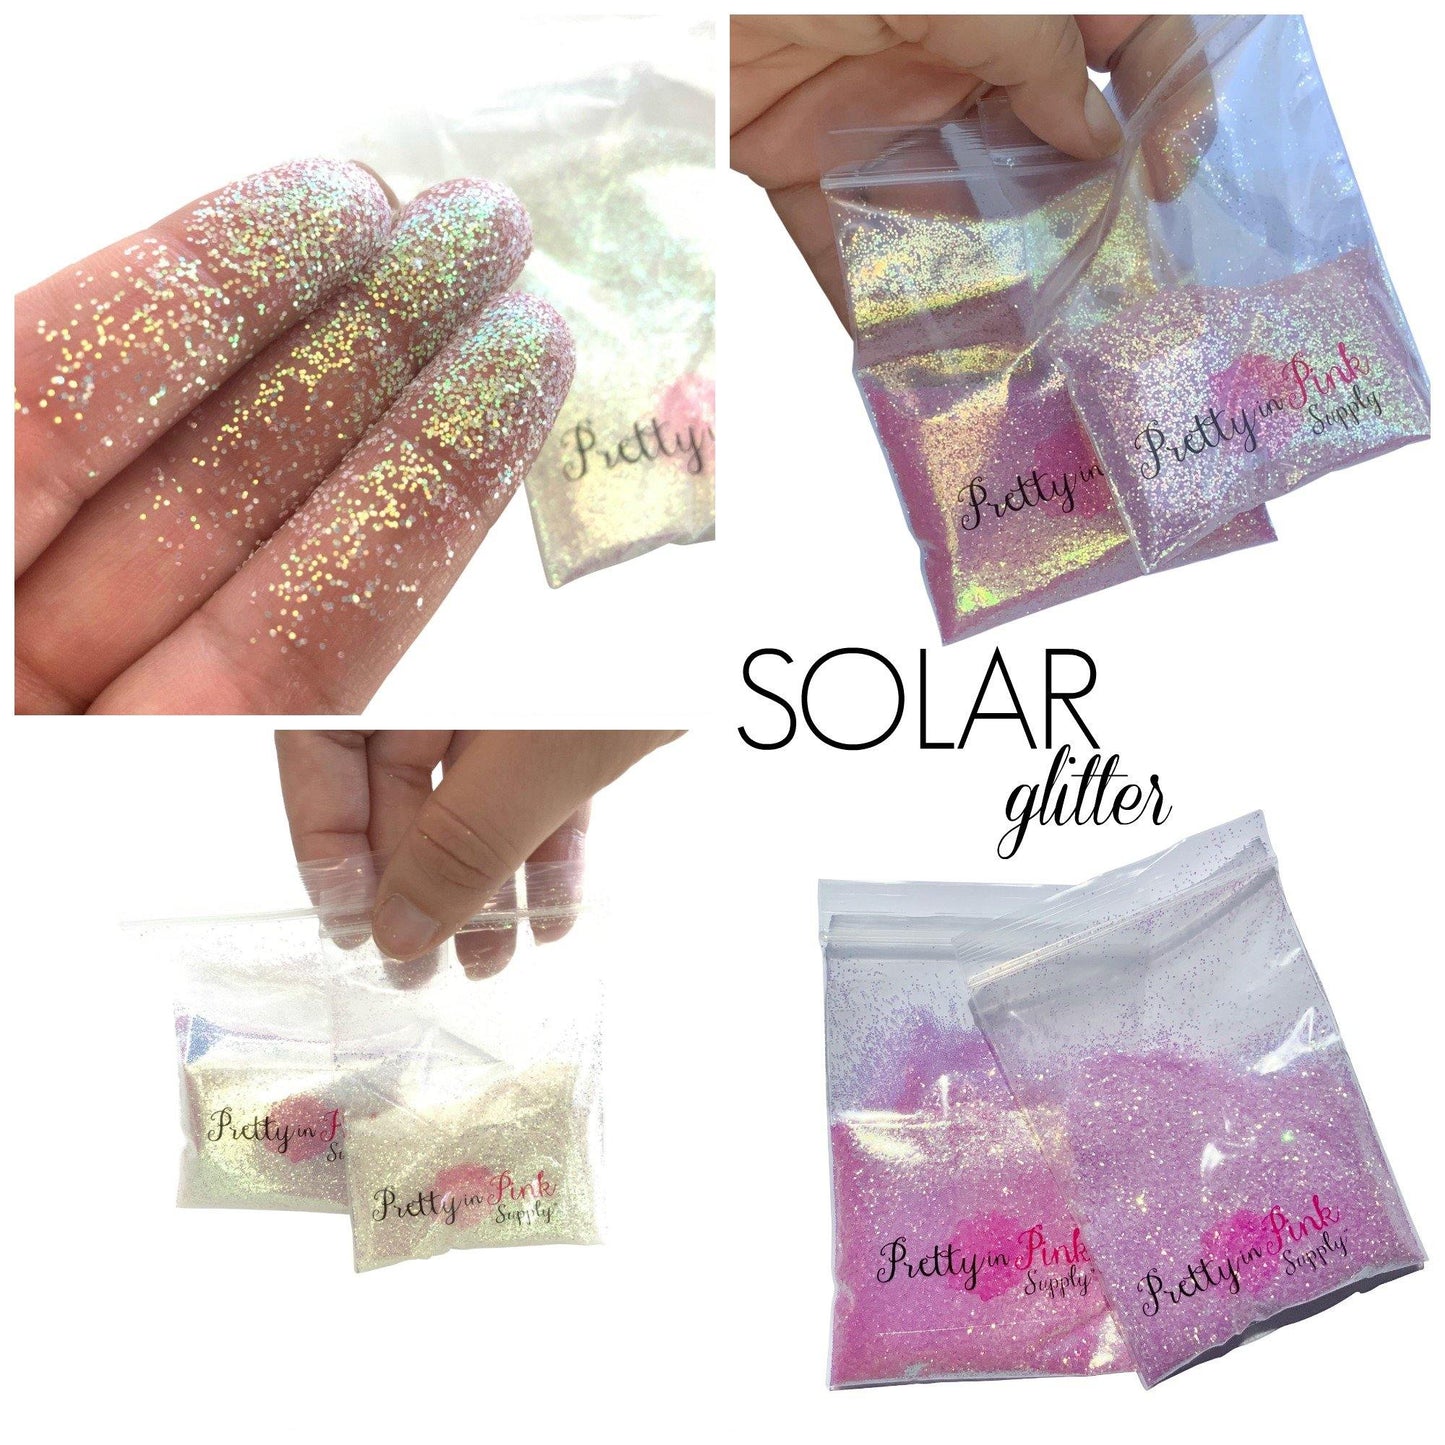 SOLAR Ultra Fine Glitter - Pretty in Pink Supply